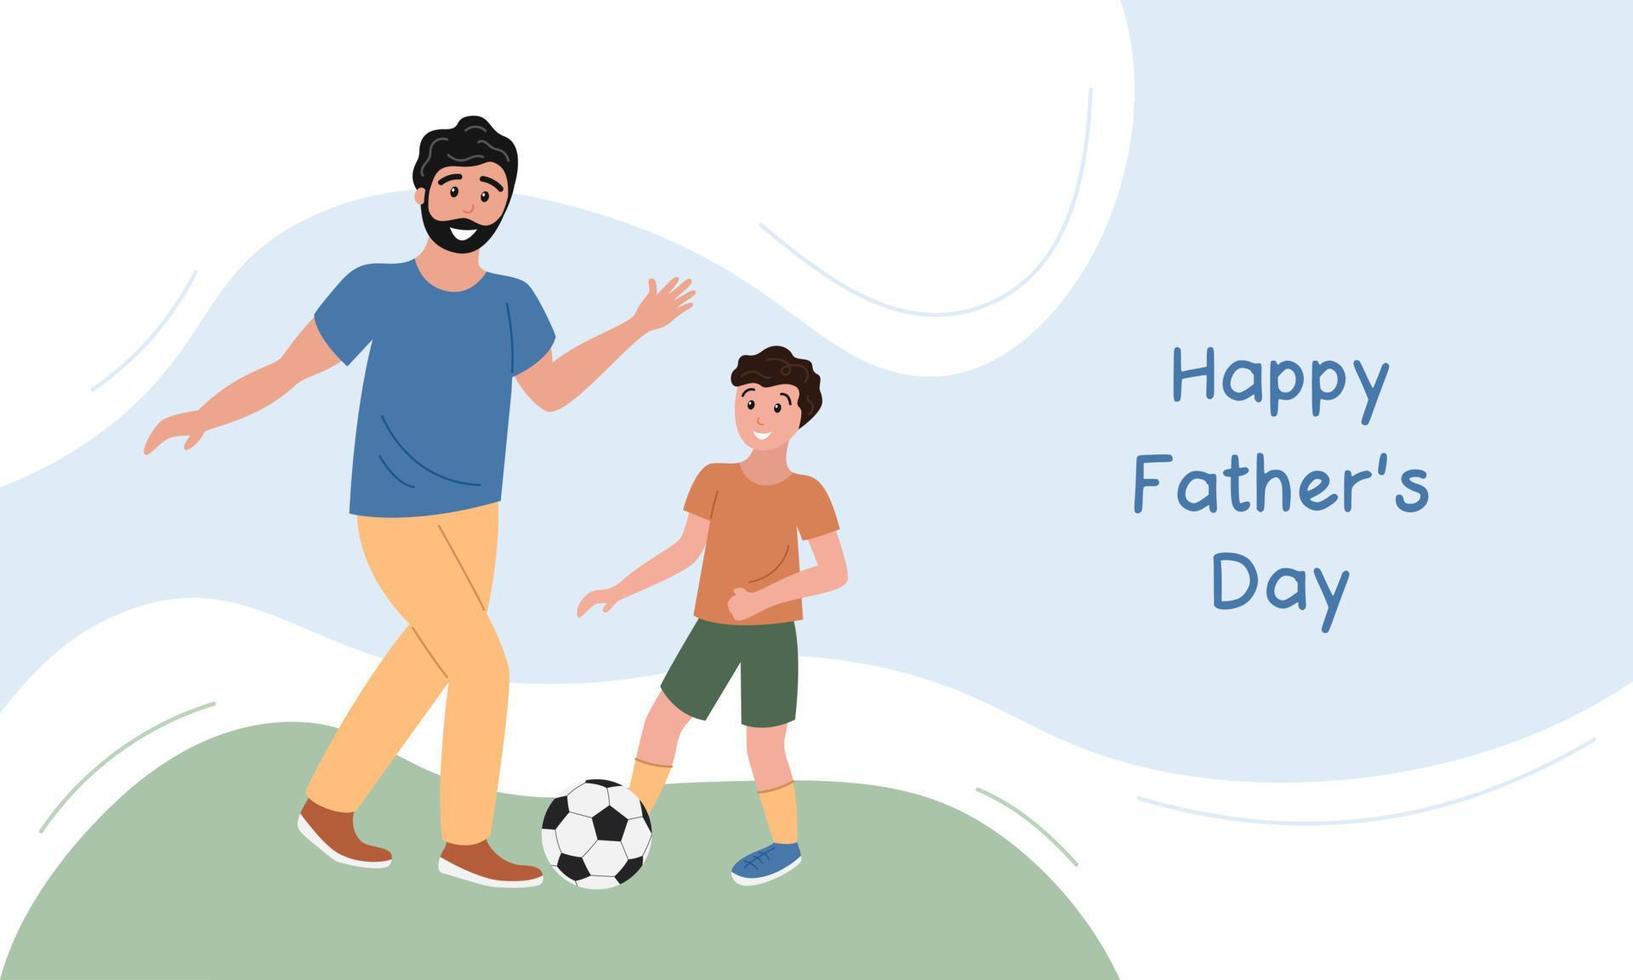 pancarta del día del padre feliz, tarjeta de felicitación. padre e hijo jugando al fútbol juntos. padre, niño y pelota de fútbol sobre césped. ilustración de cartel de vector plano